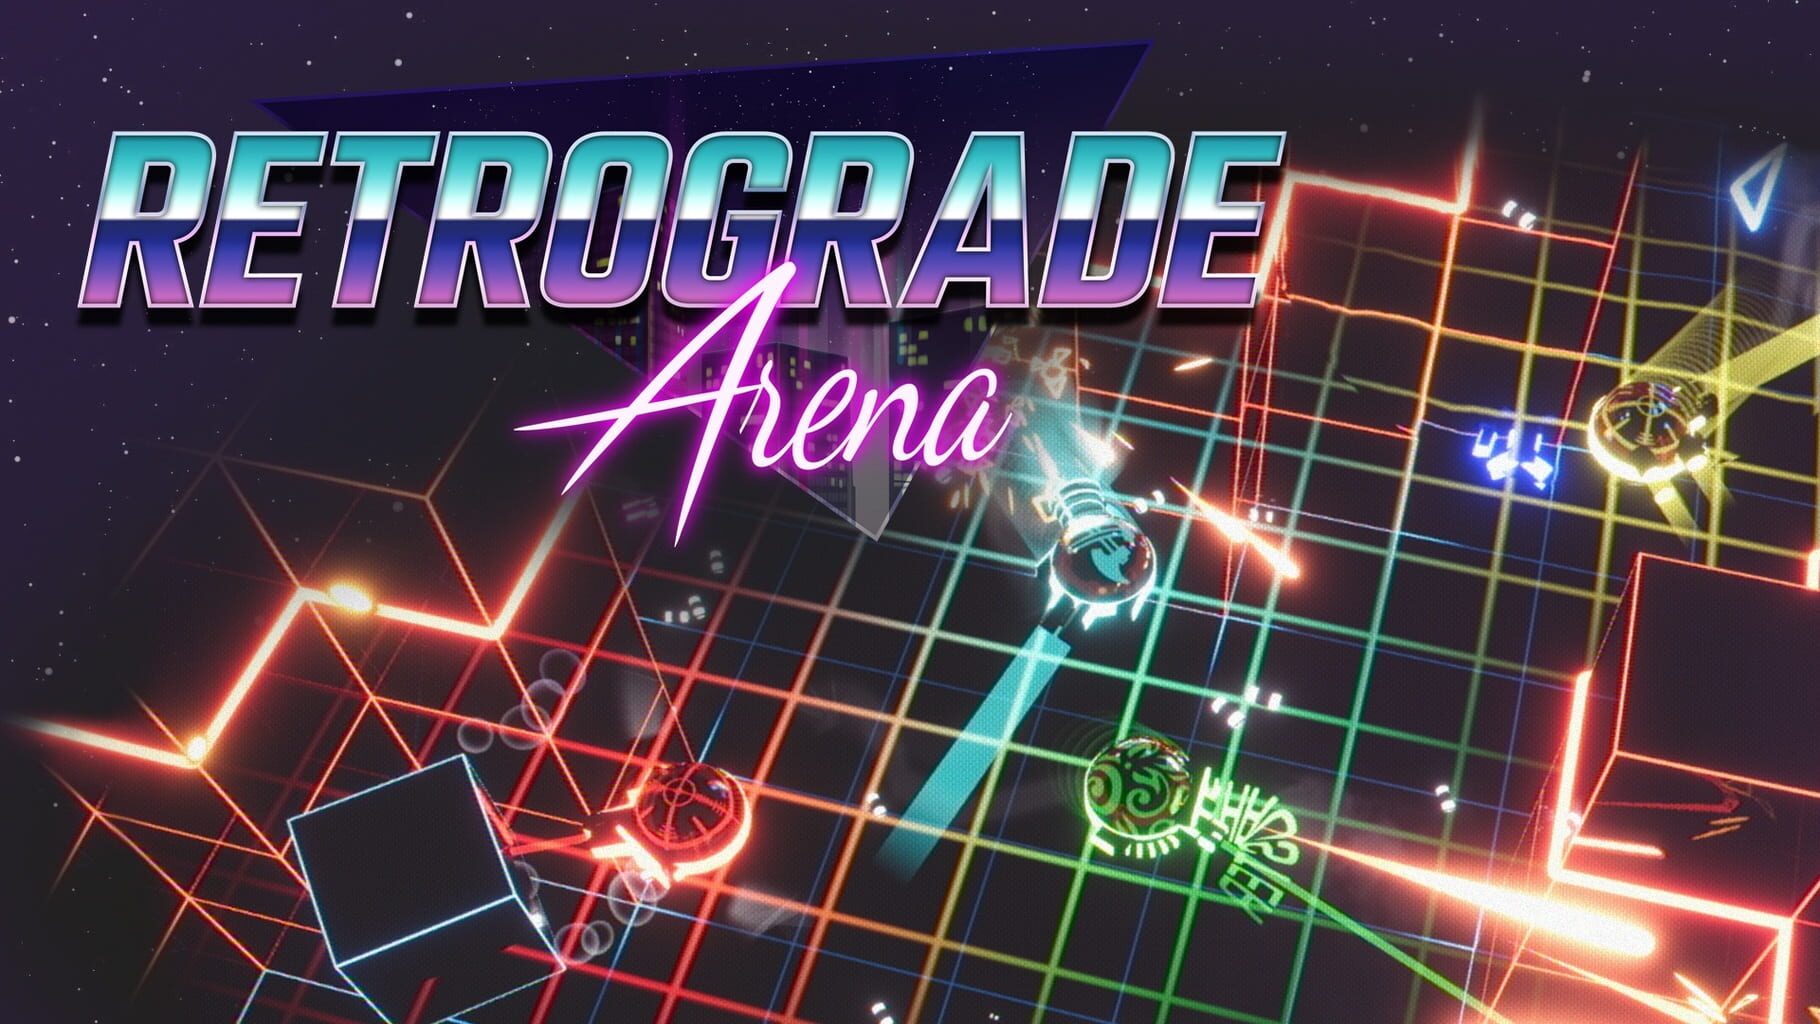 Retrograde Arena artwork